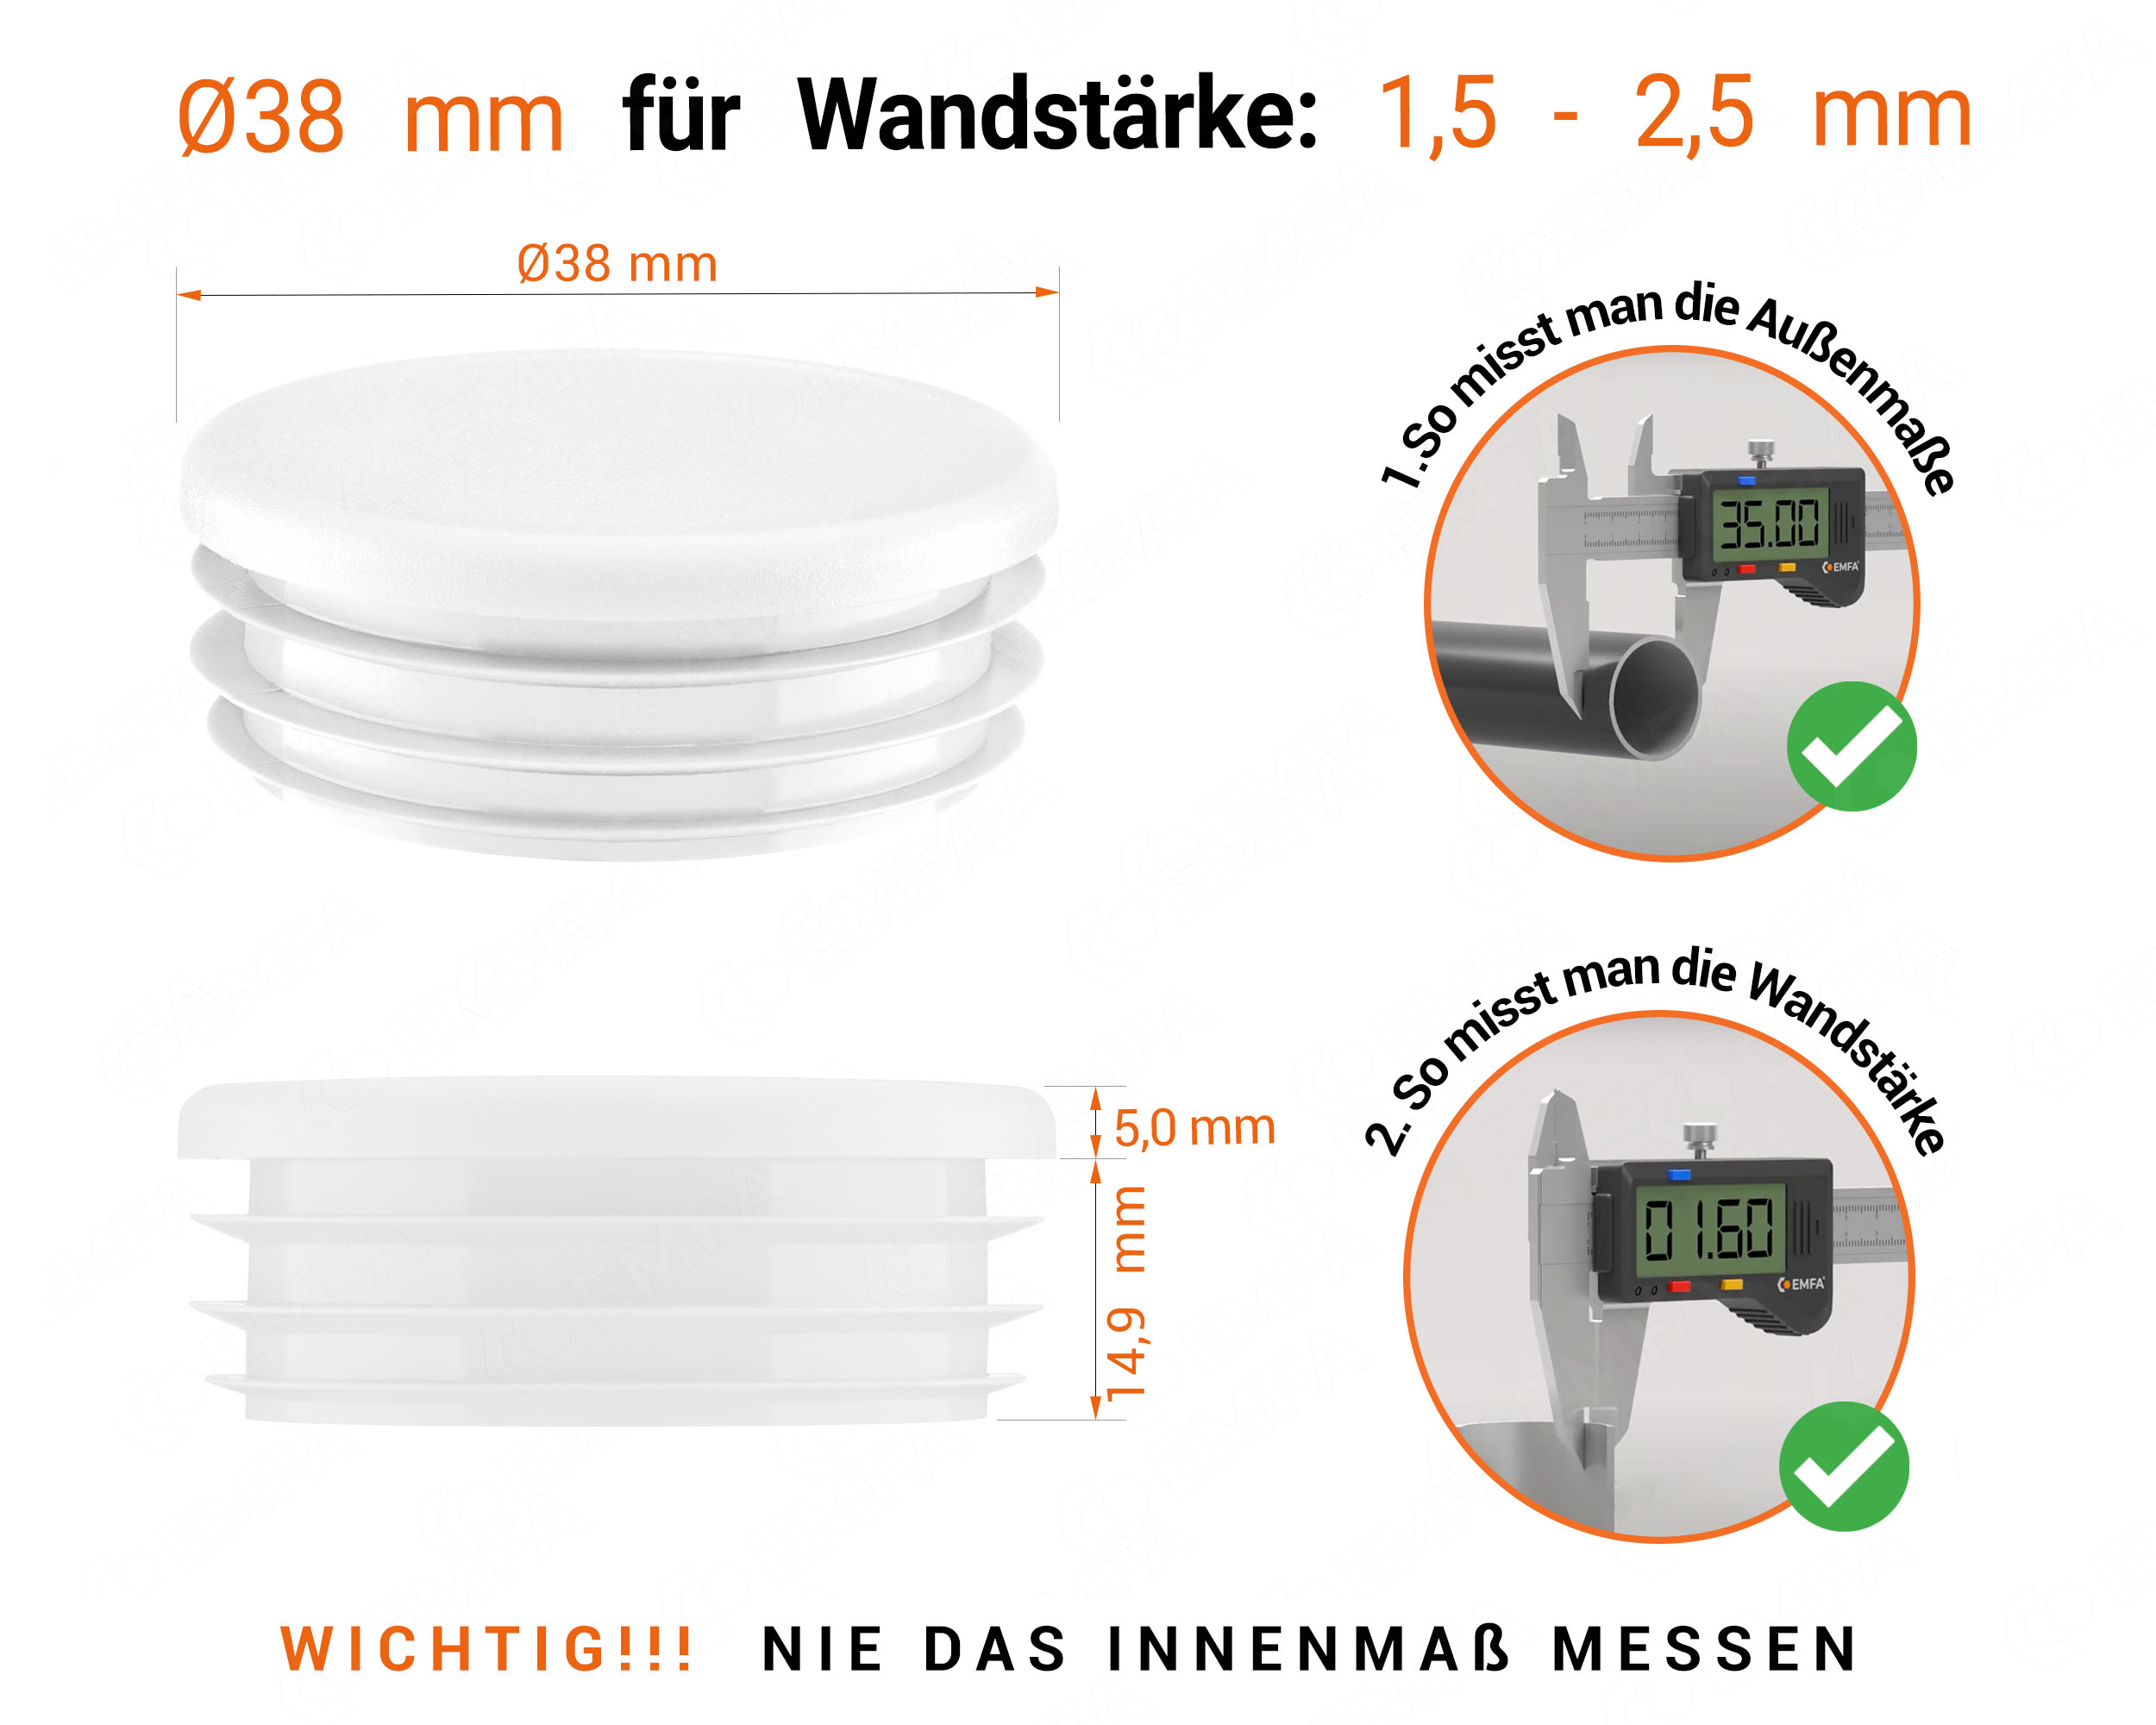 Weiße Endkappe für Rundrohre in der Größe 38 mm mit technischen Abmessungen und Anleitung für korrekte Messung